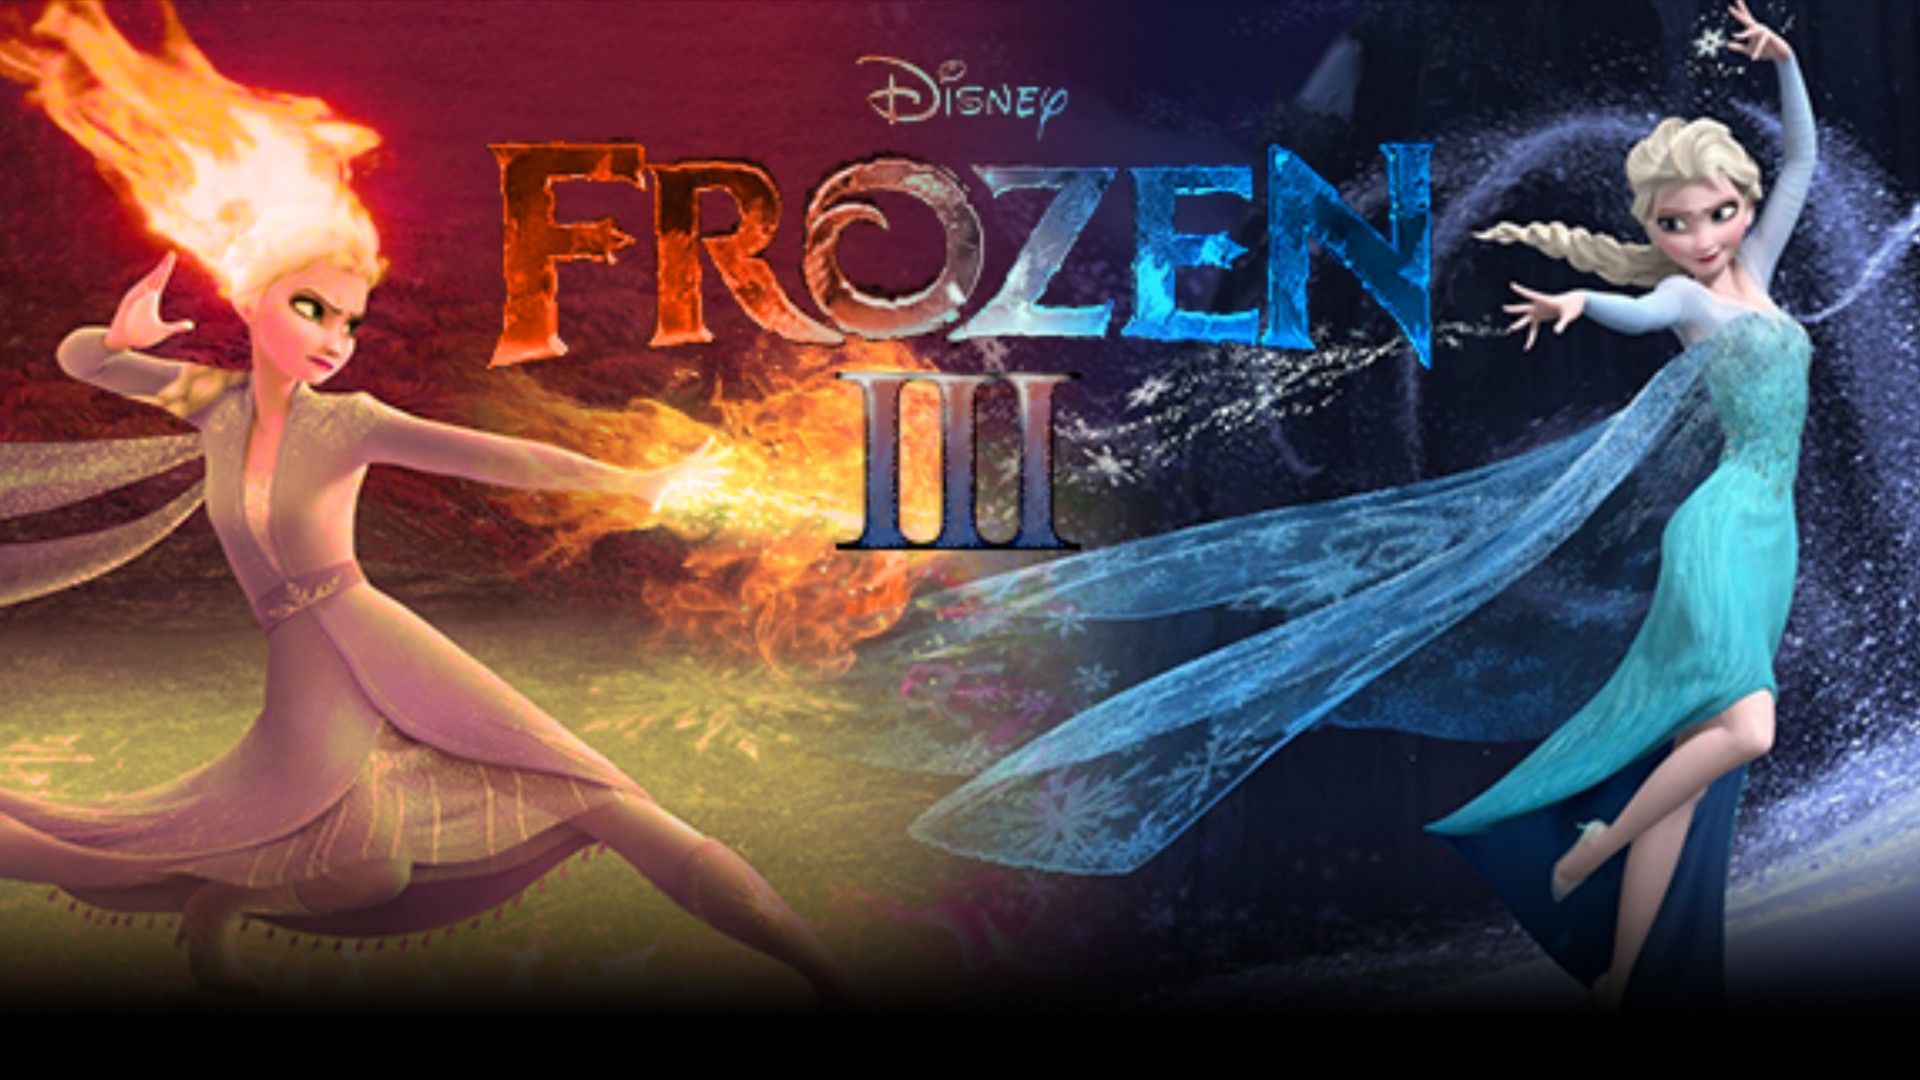 Frozen 3 : Spoilers, Streaming, Recap, Schedule & Where To Watch? -  SarkariResult